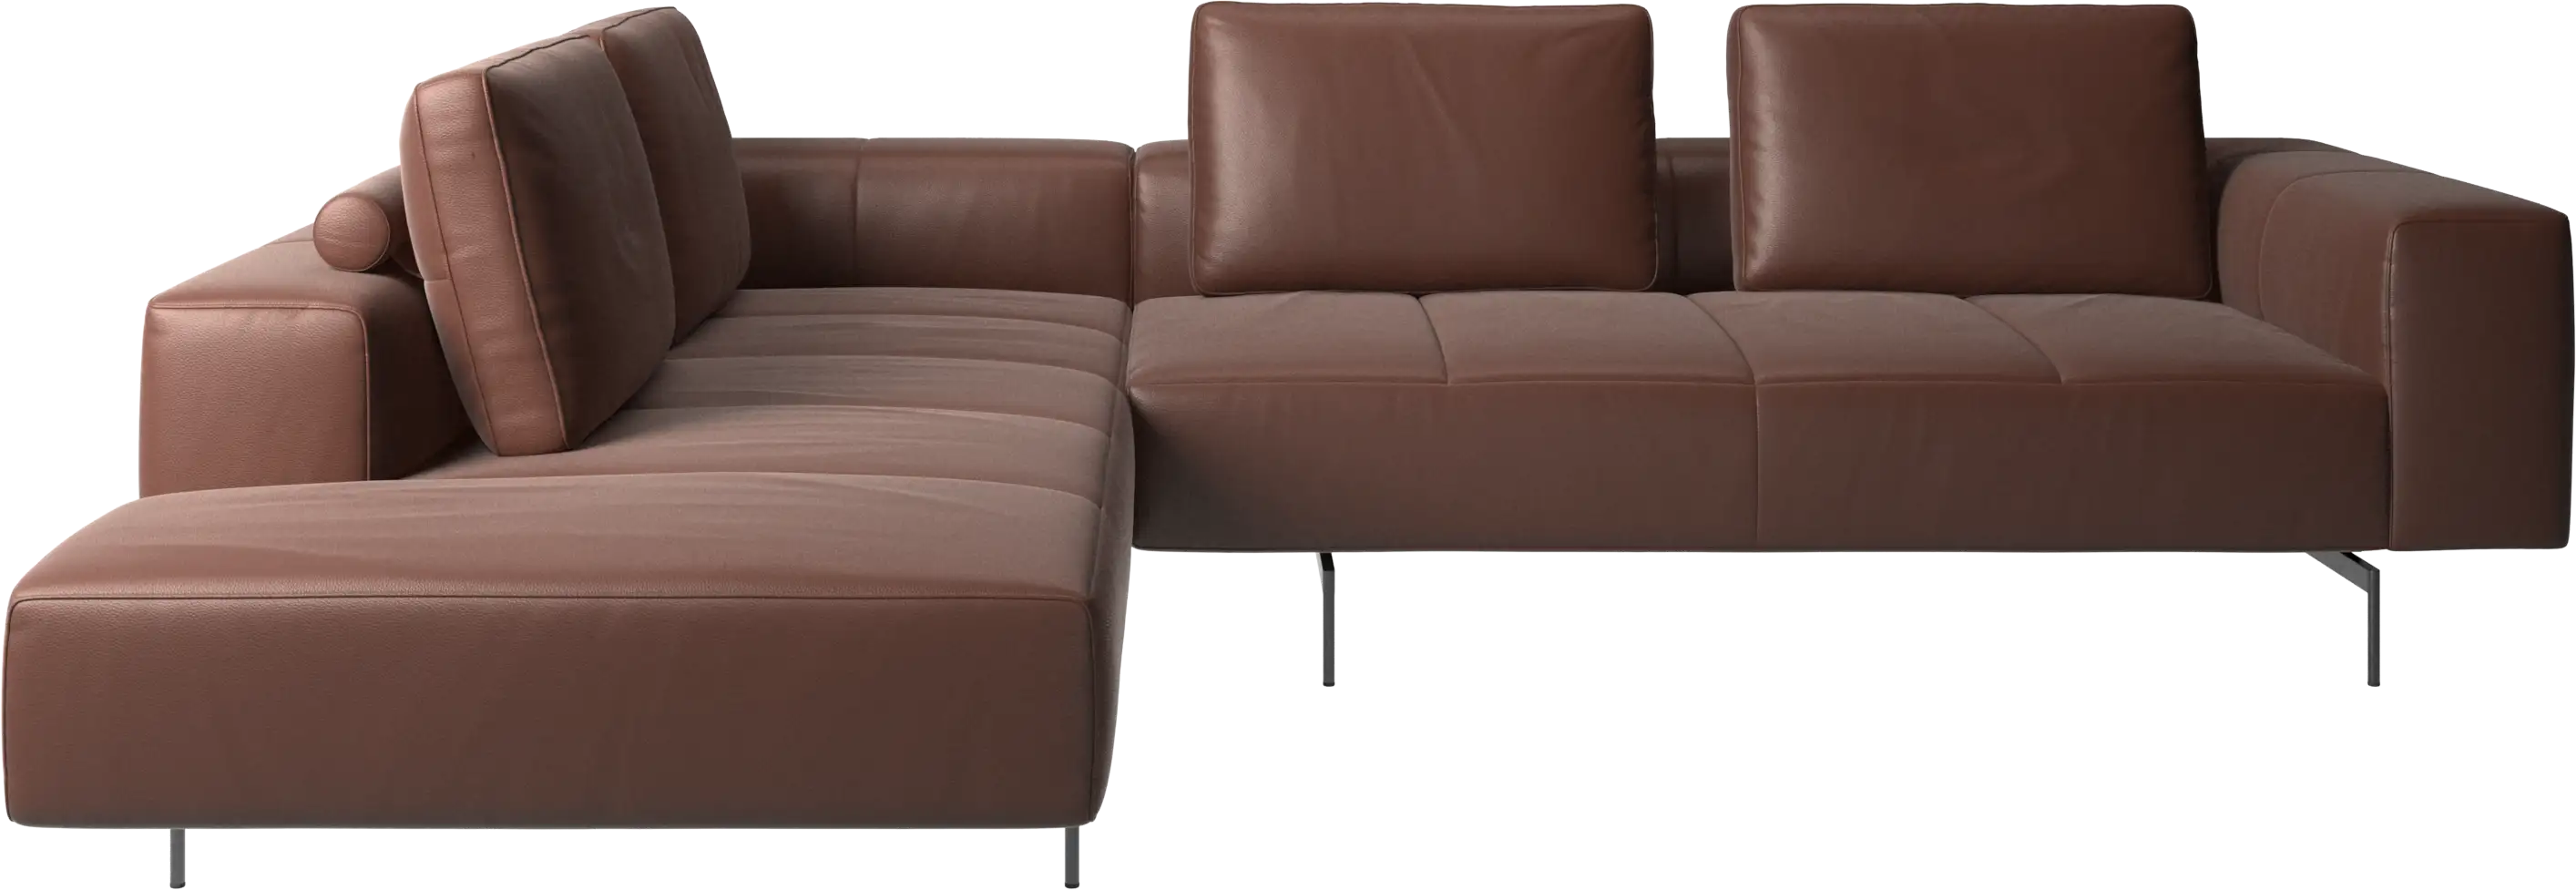 γωνιακός καναπές Amsterdam με μονάδα lounging